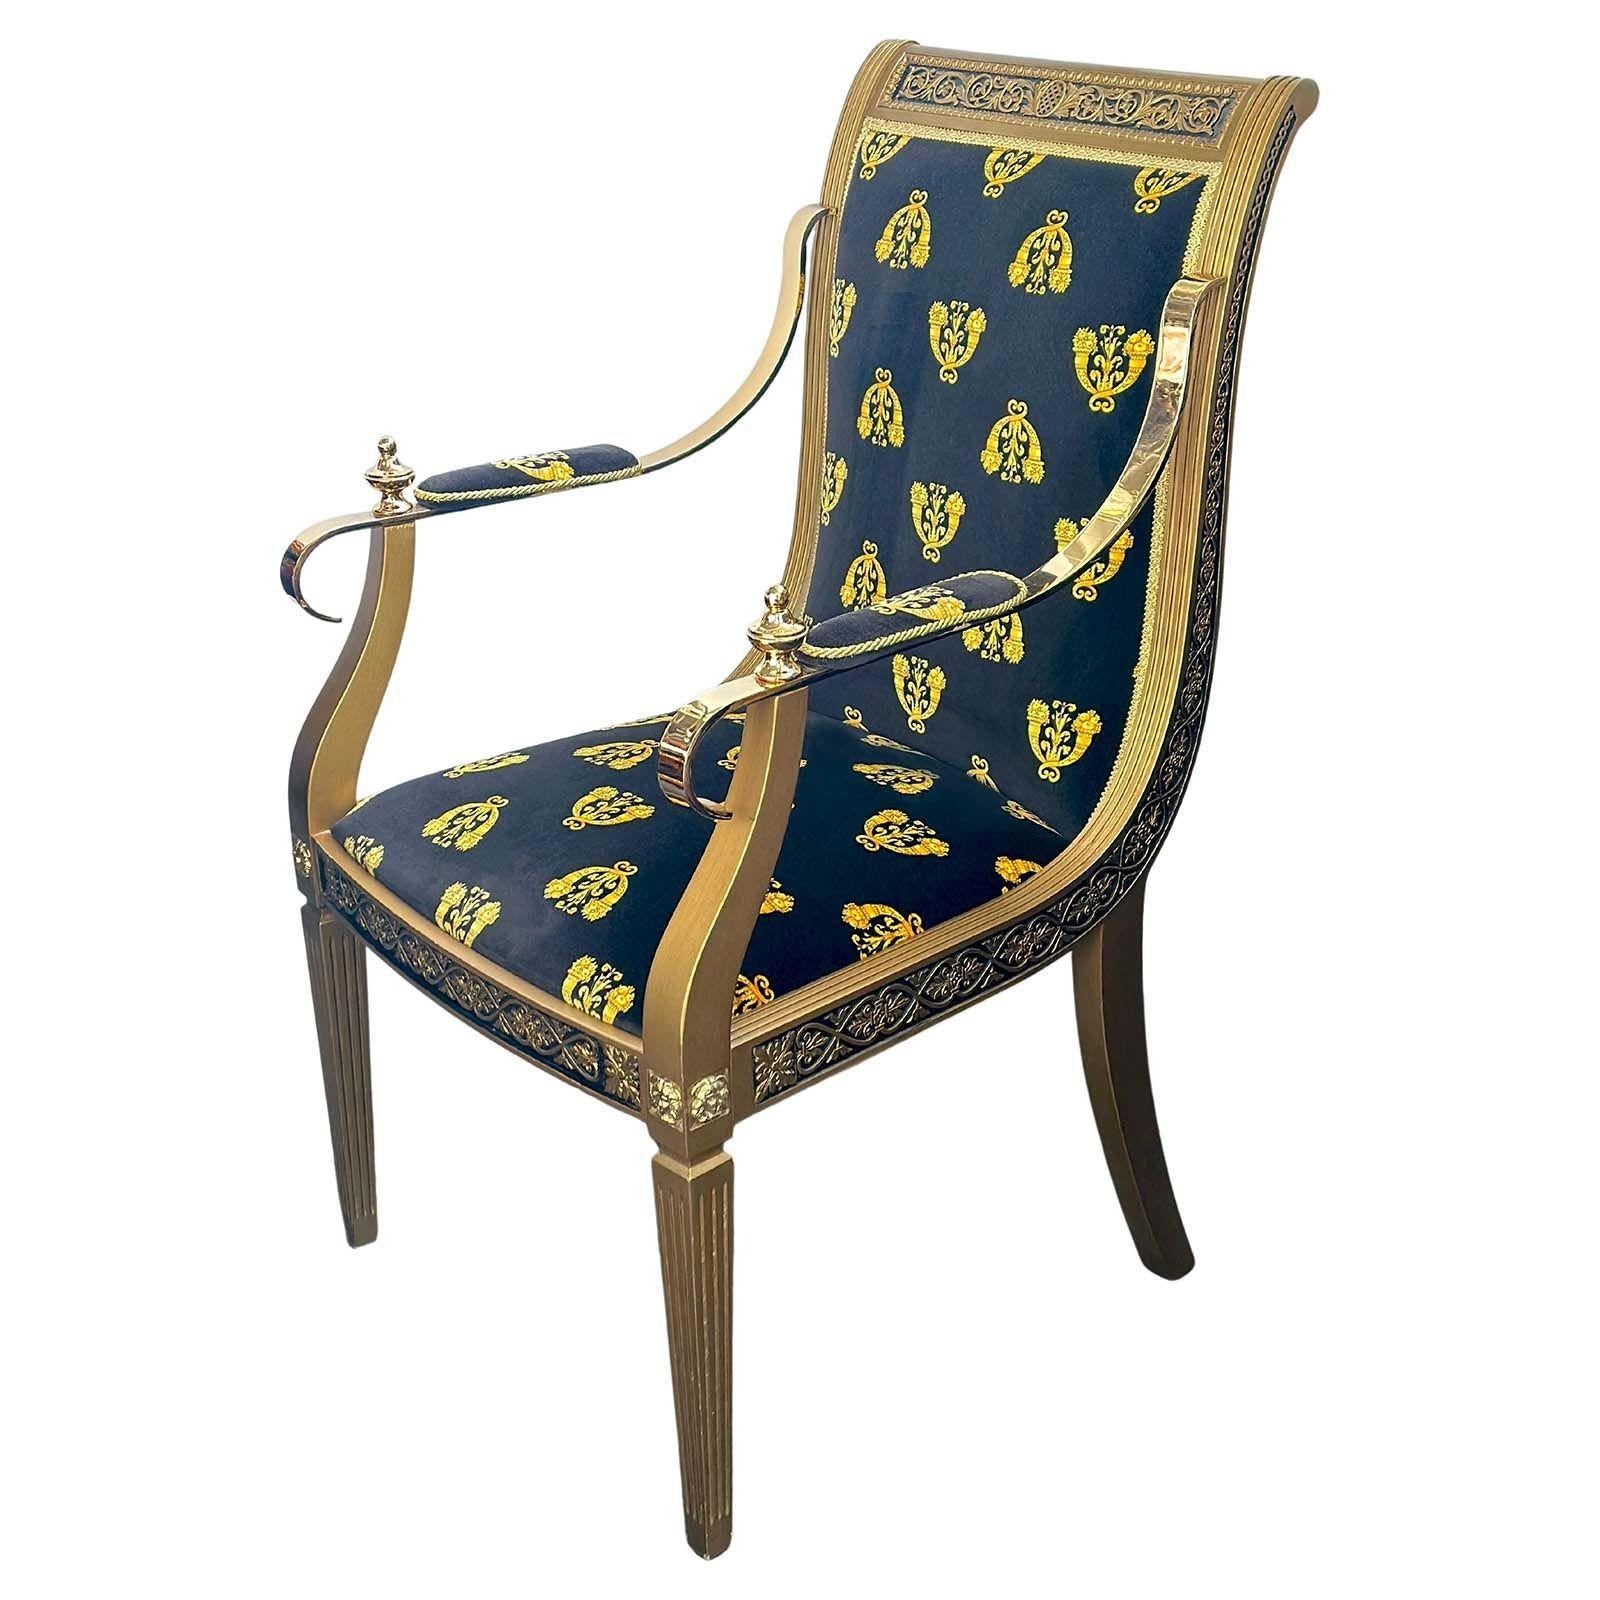 Paire de fauteuils exceptionnels Versace Cappelletti Cantu. Fabriqué en Italie, vers les années 1990.
Dimensions :
41 